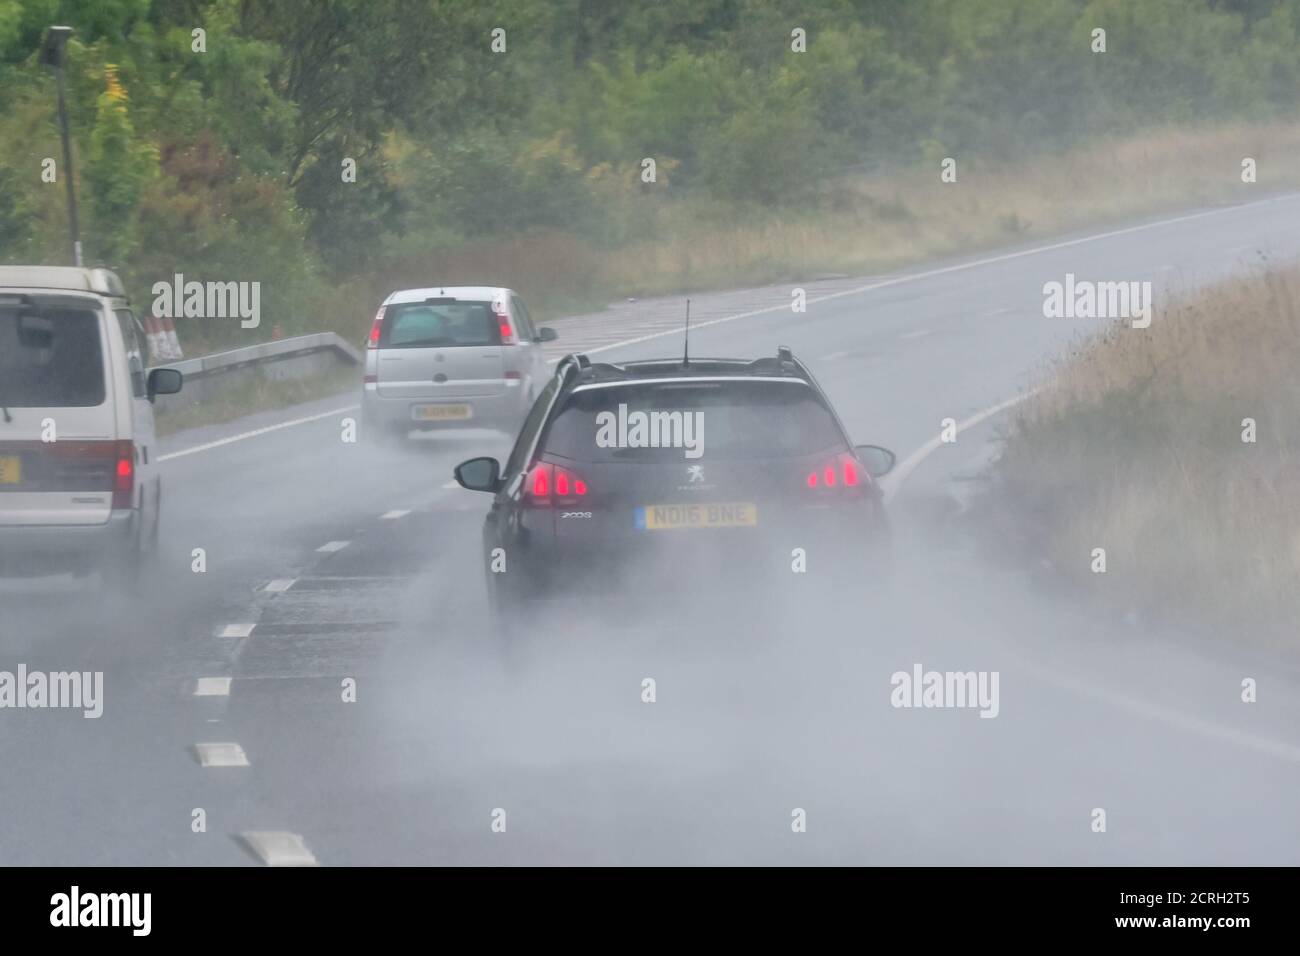 Fahrer, die Autos auf einer zweispurigen Fahrbahn bei starkem Regen mit schlechter Sicht in England, Großbritannien, fahren. Schlechtes Wetter und nasse, gefährliche Straße beim Regen. Stockfoto